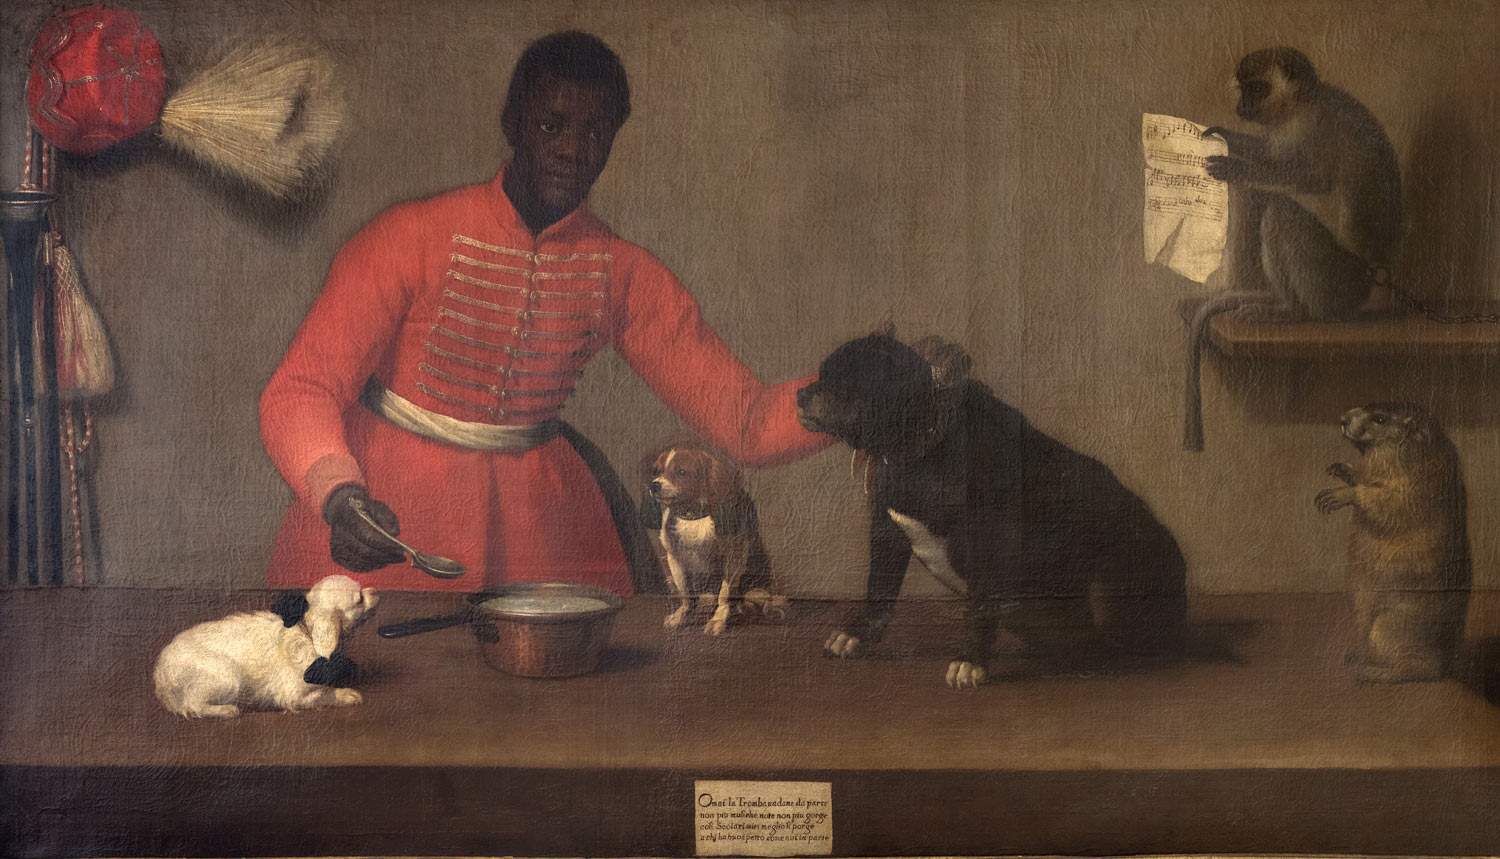 Une exposition au Mudec sur les présences africaines dans l'art entre le 16e et le 19e siècle